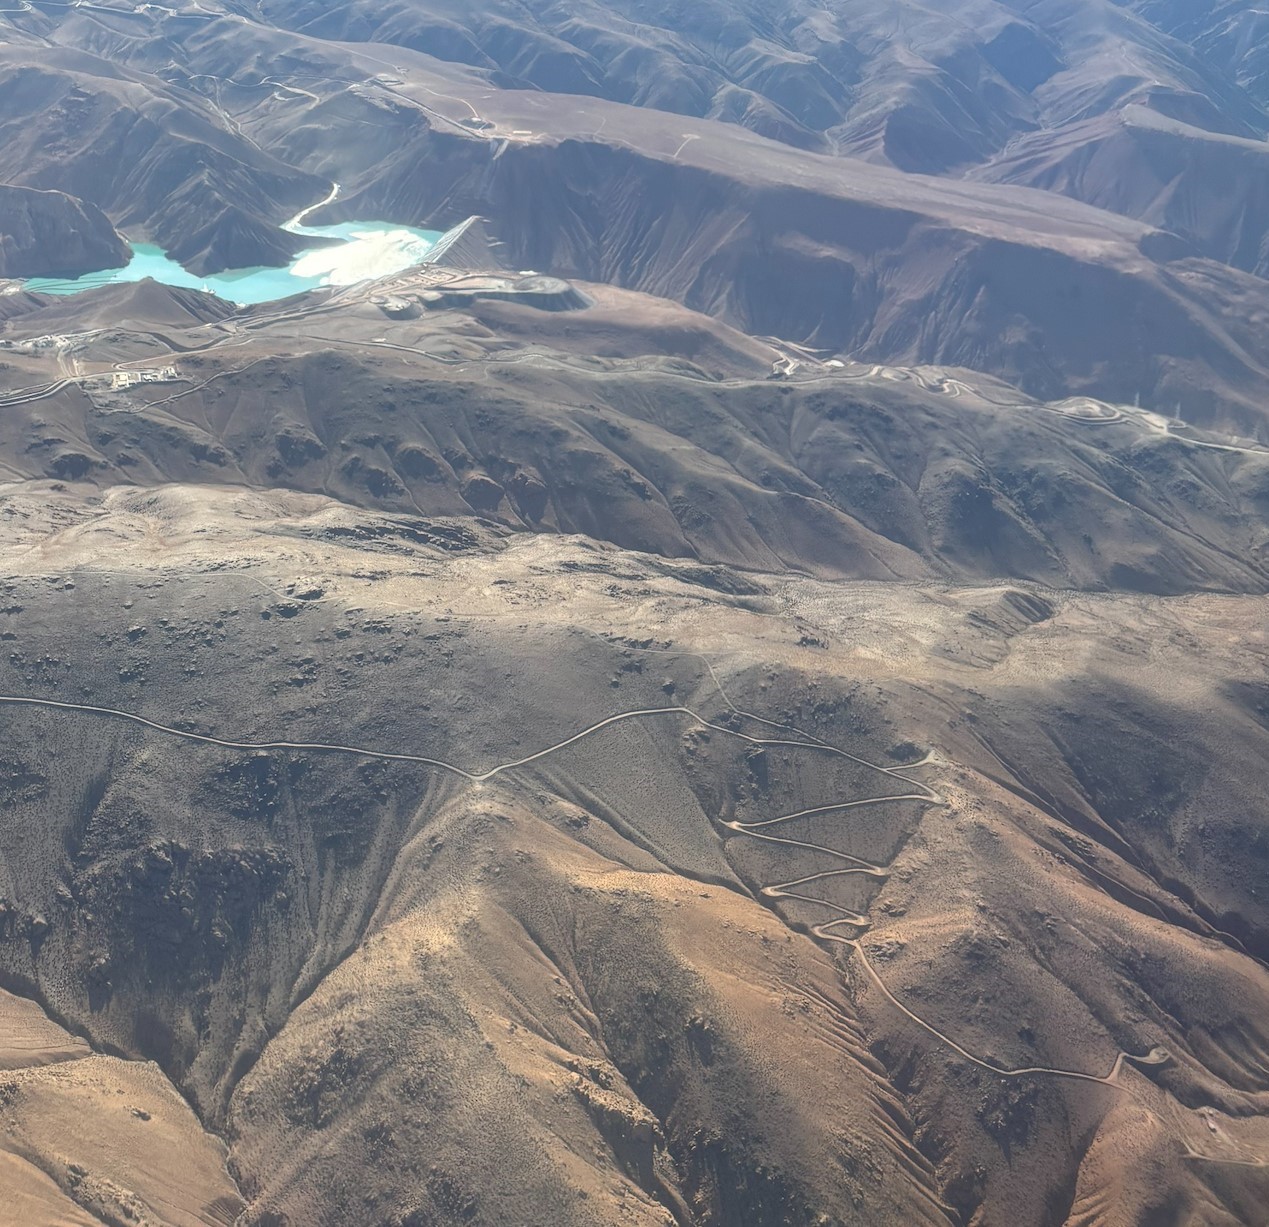 Photo A: QBII tailings dam as seen from the air.